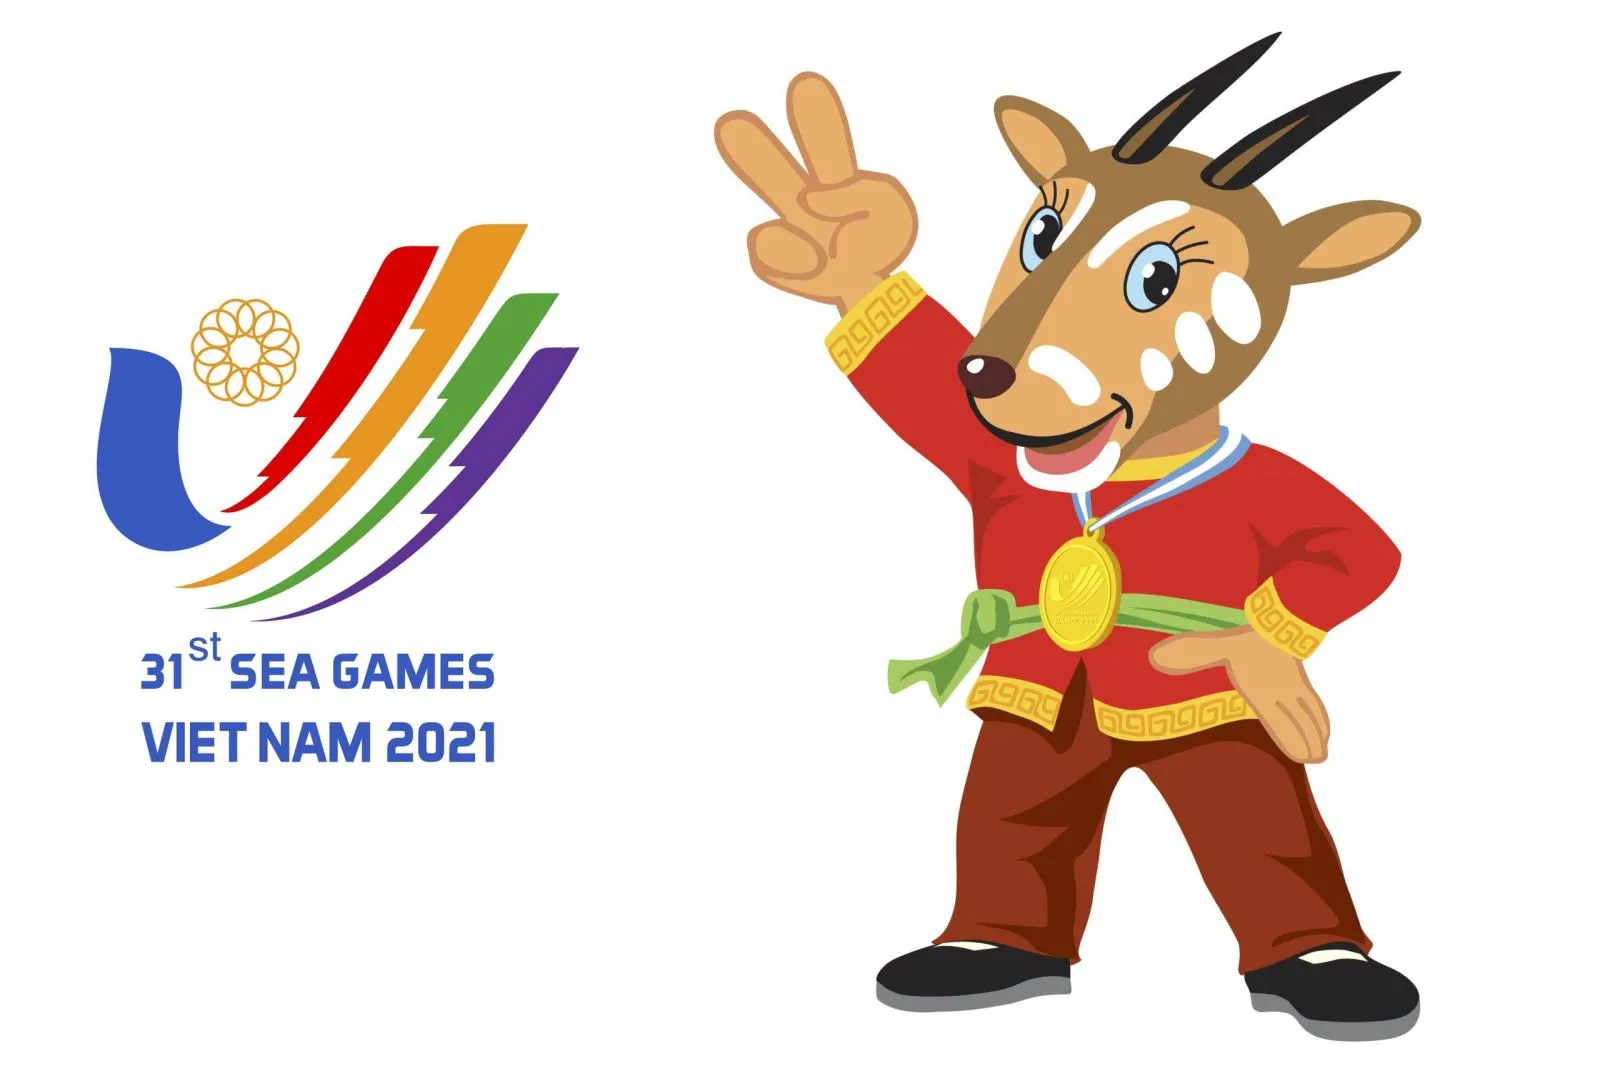 (VOH) - Chúng ta cùng điểm qua một số tổng quan về SEA Games 31 diễn ra từ ngày 12 - 23/5/2022 tại Việt Nam.